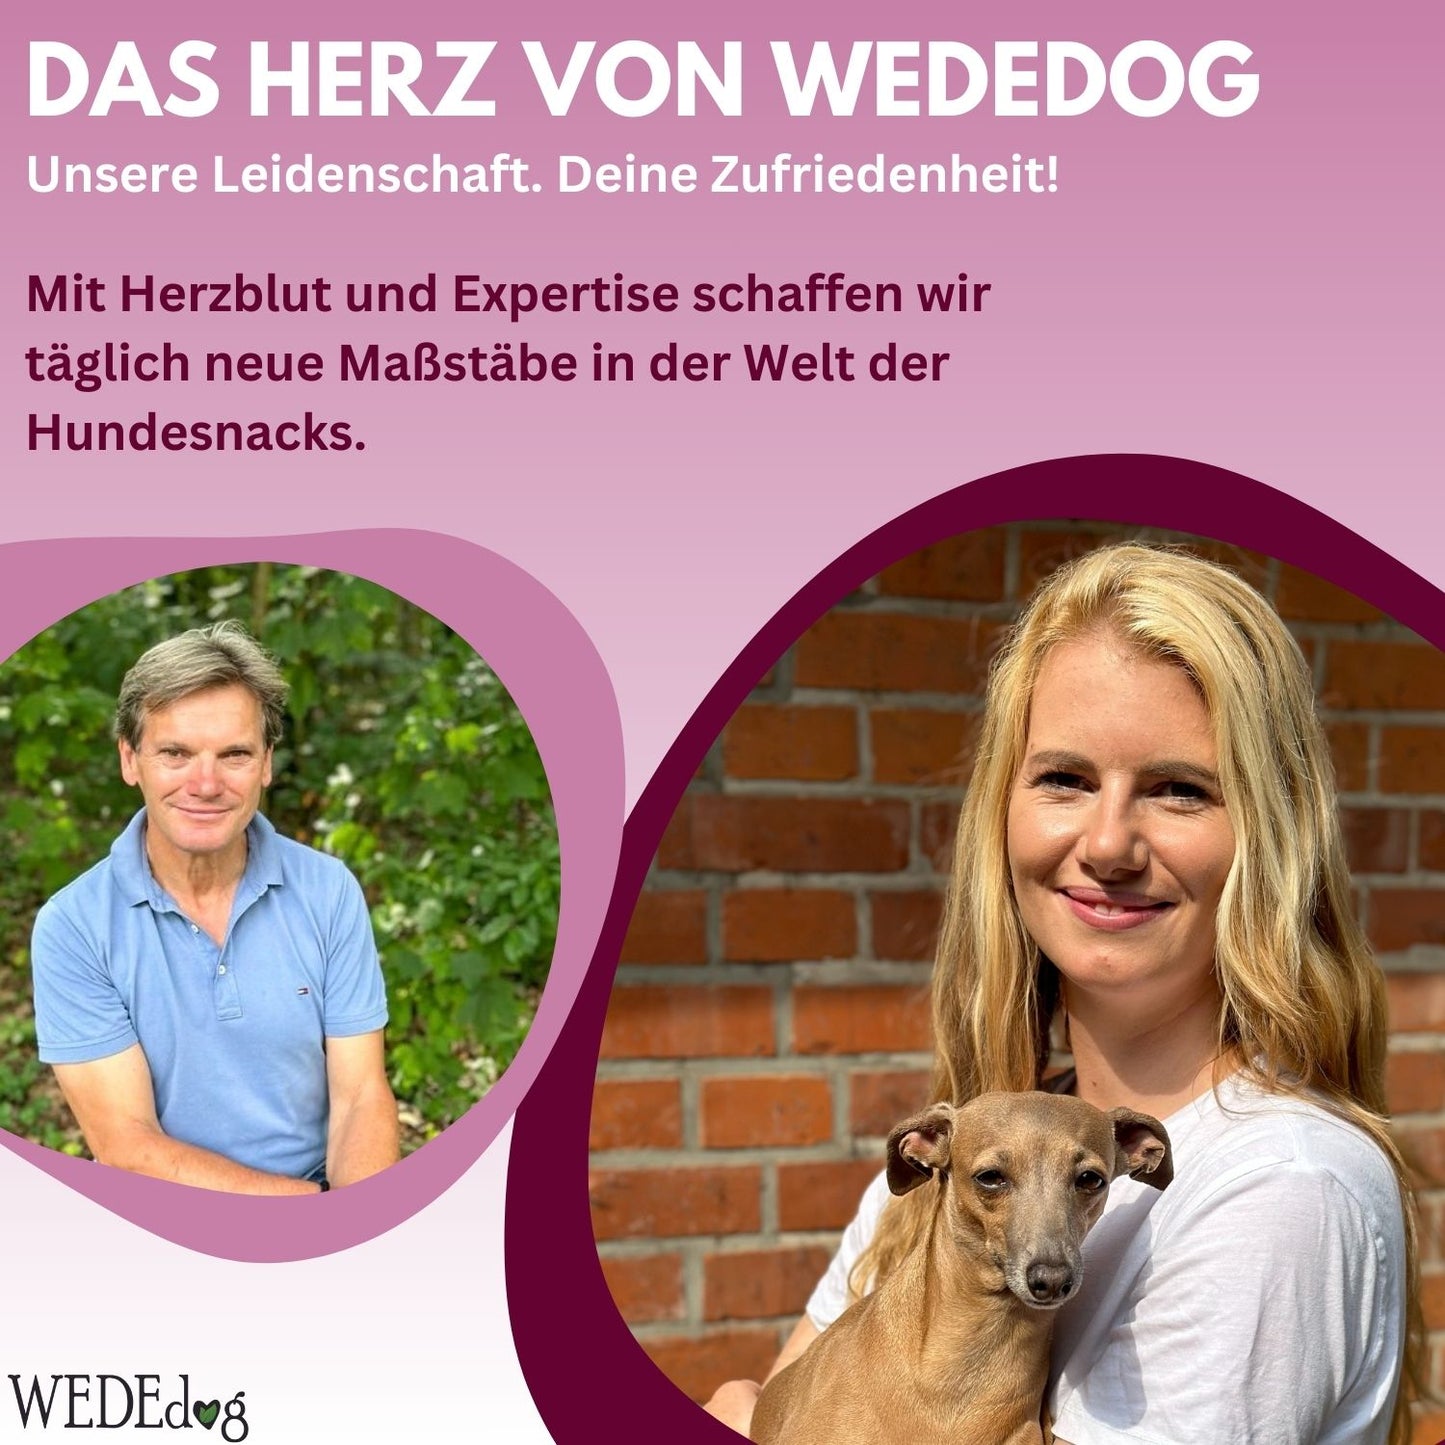 Natürliche Kausnacks für Hunde I Hundegelenke stärken I WEDEdog SOFT Sticks Hirsch + Gelenkfit I Premium Kausticks für Hunde I 110g